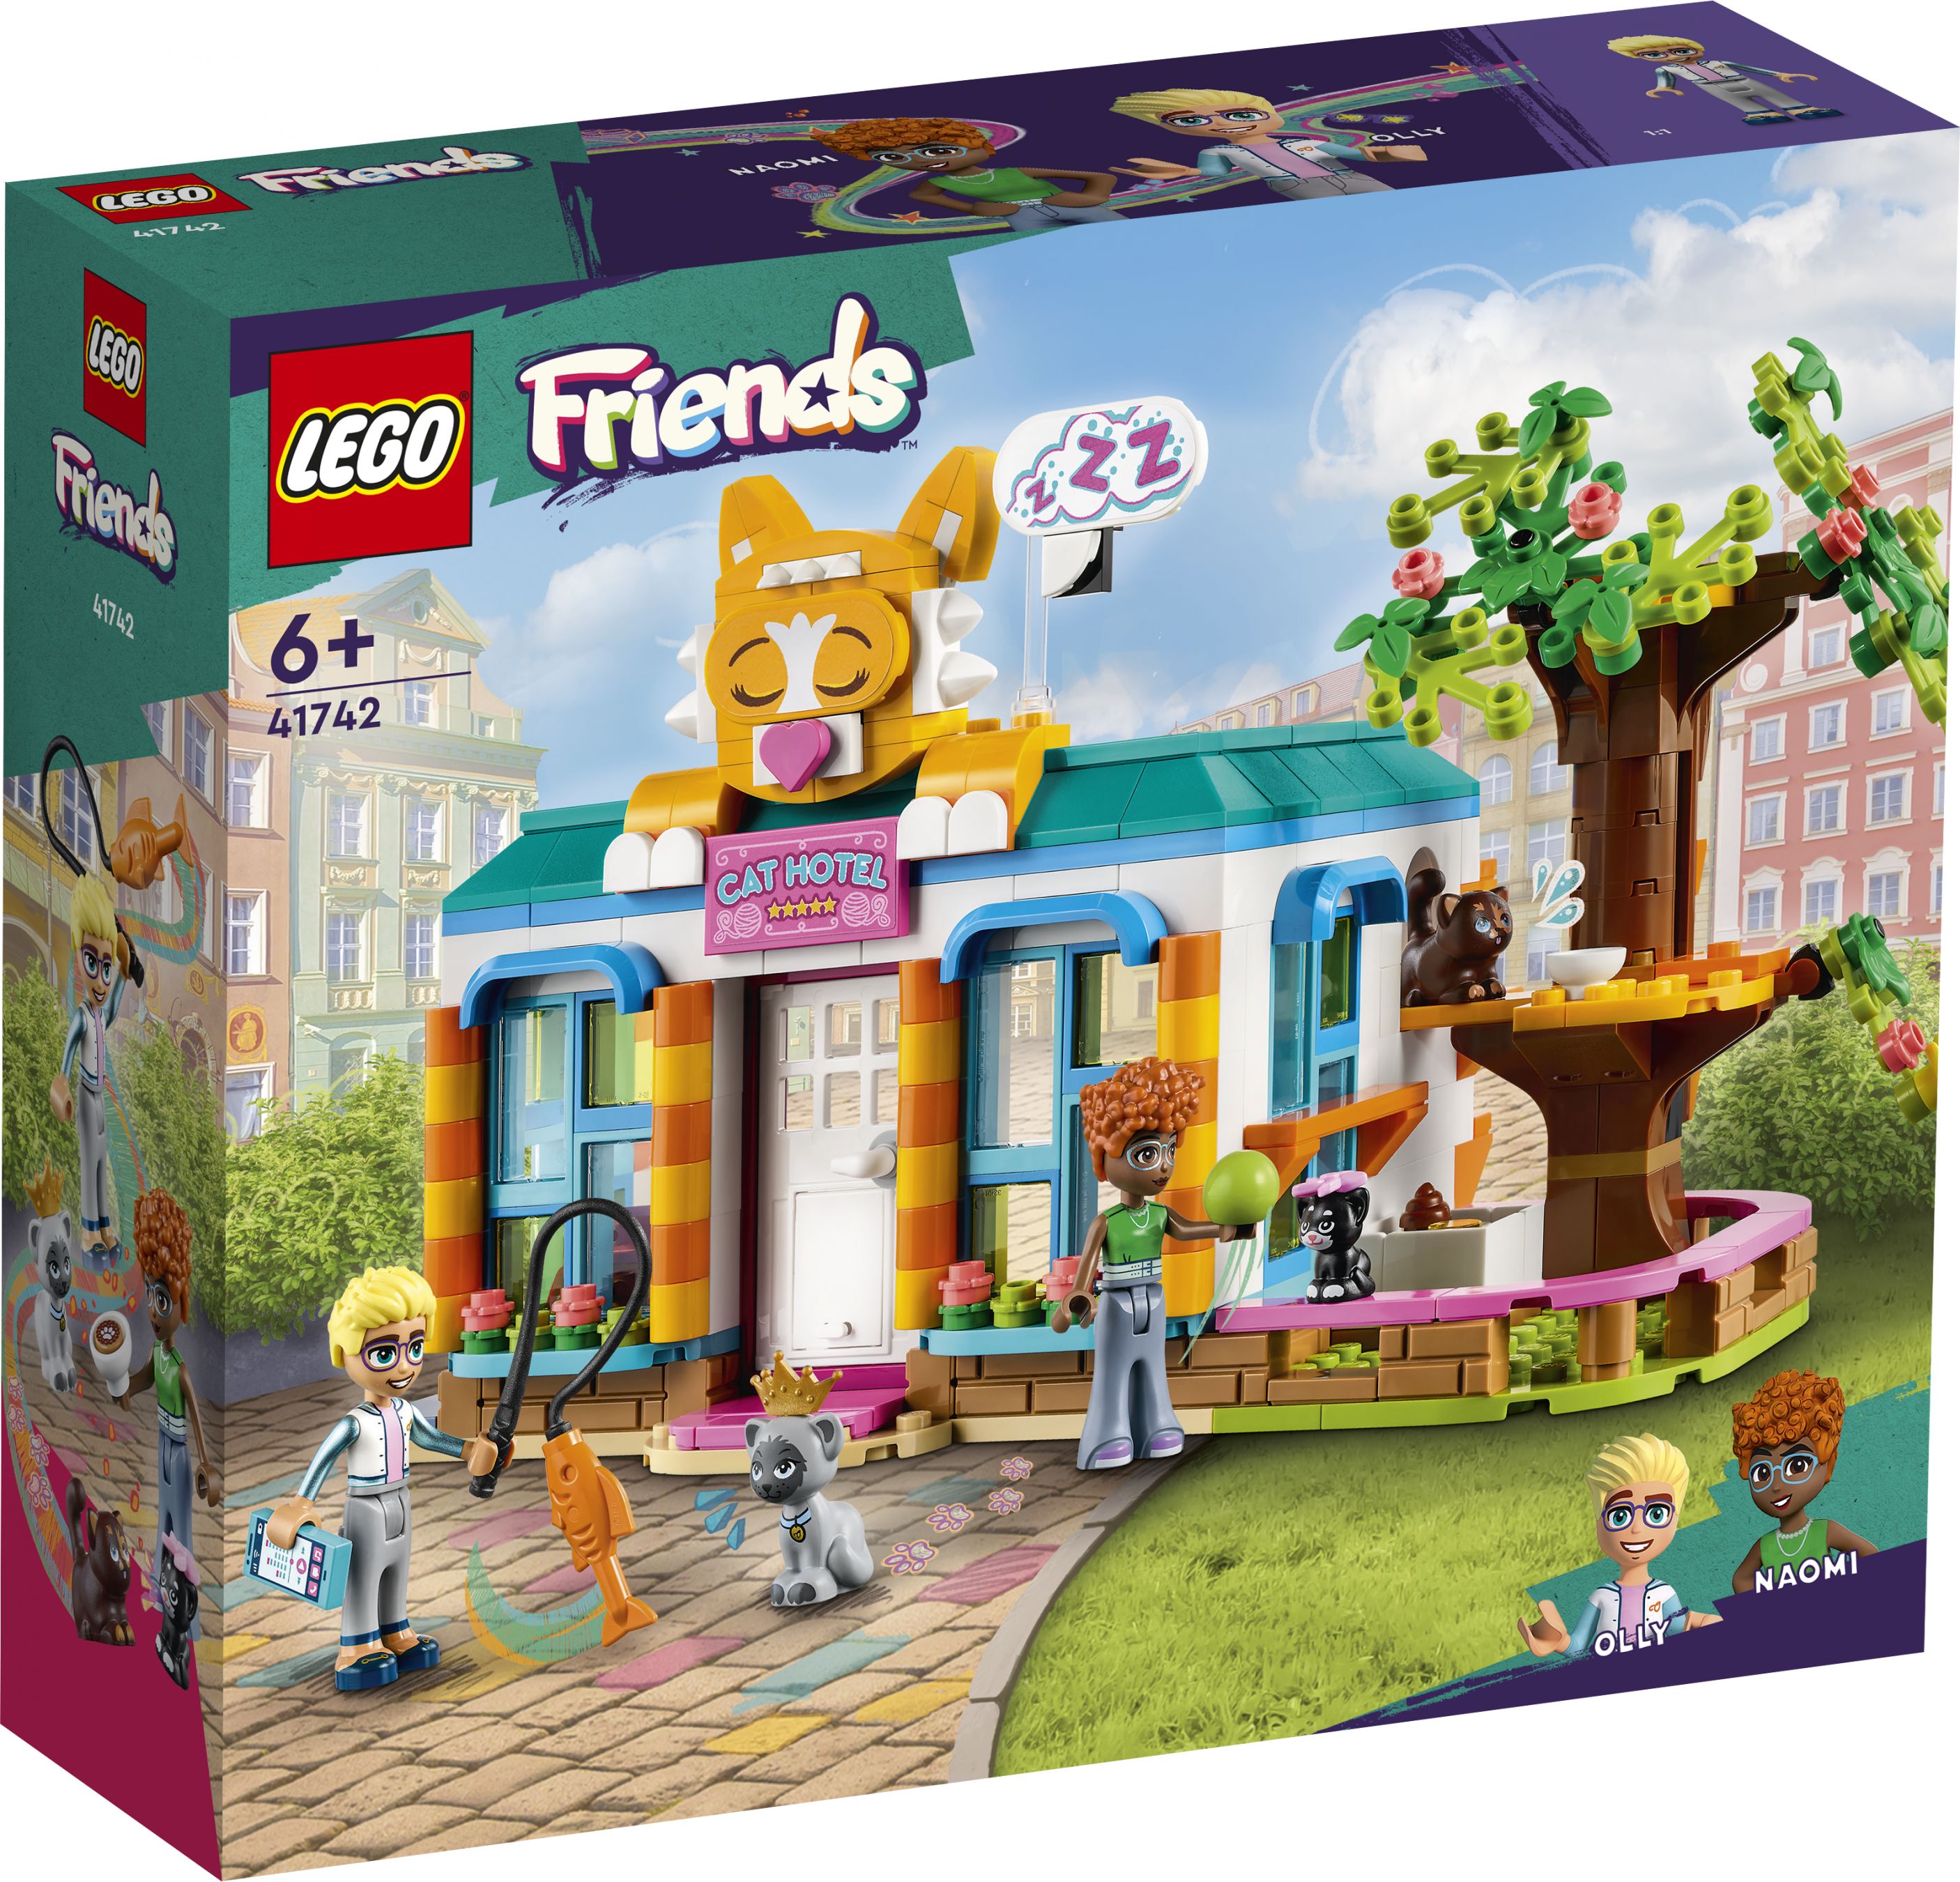 LEGO Friends 41742 Katzenhotel LEGO_41742_Box1_v29.jpg